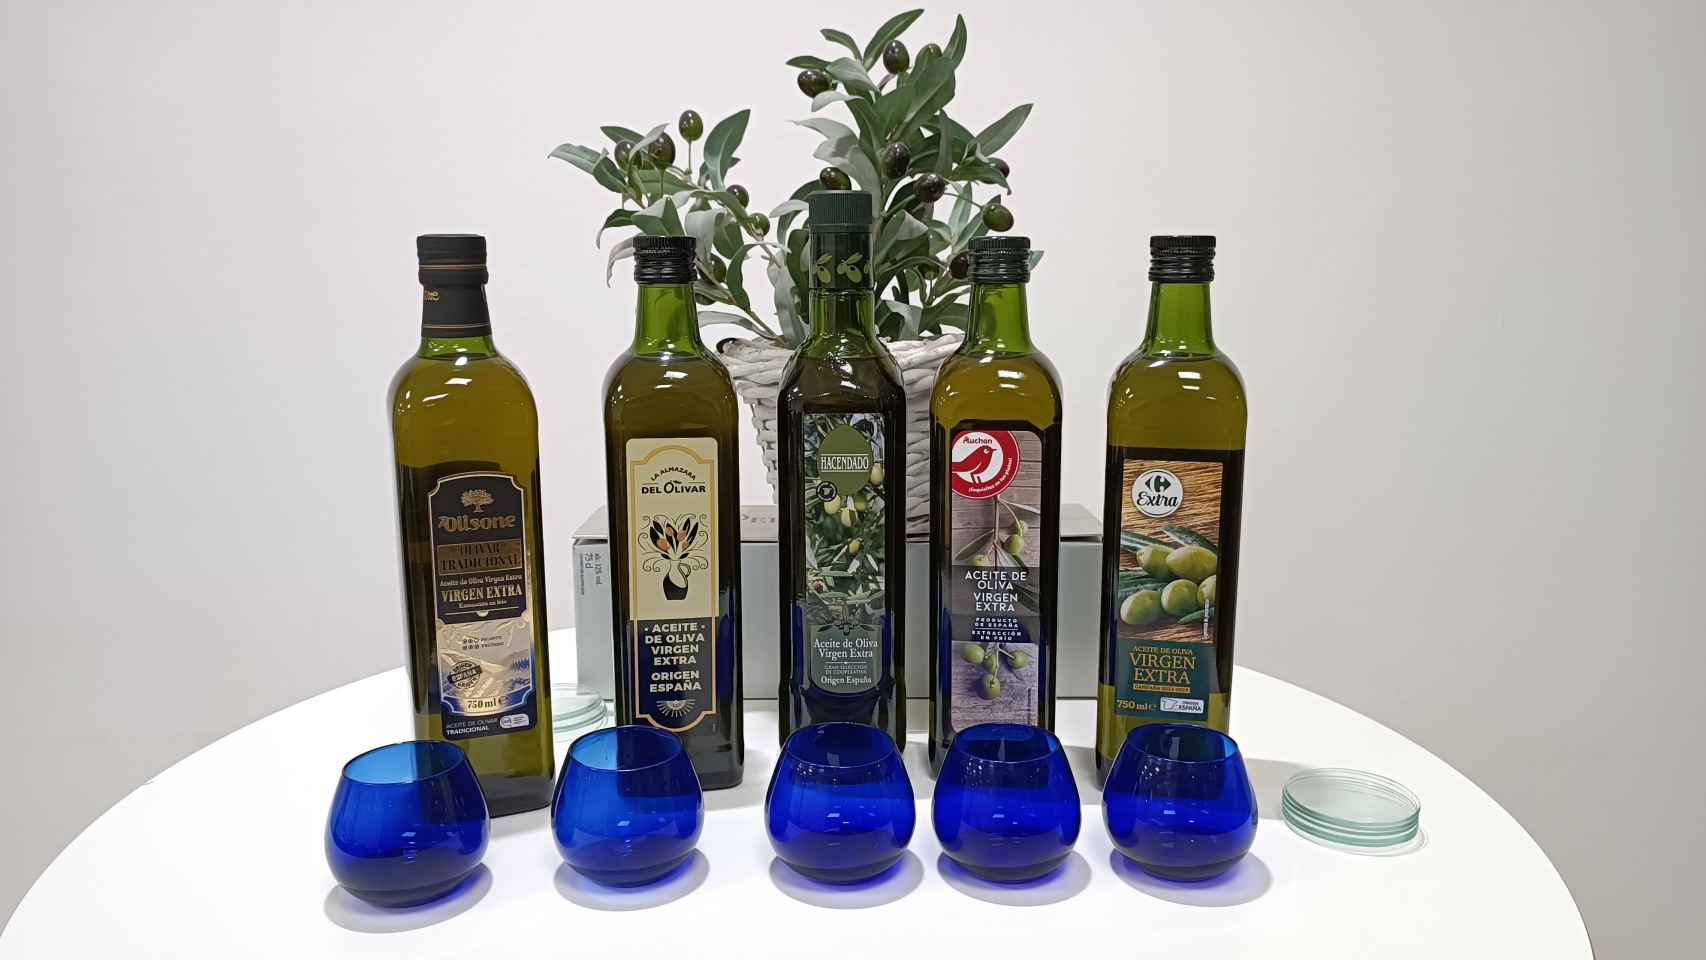 Los cinco aceites de oliva virgen extra de los supermercados probados en la cata.